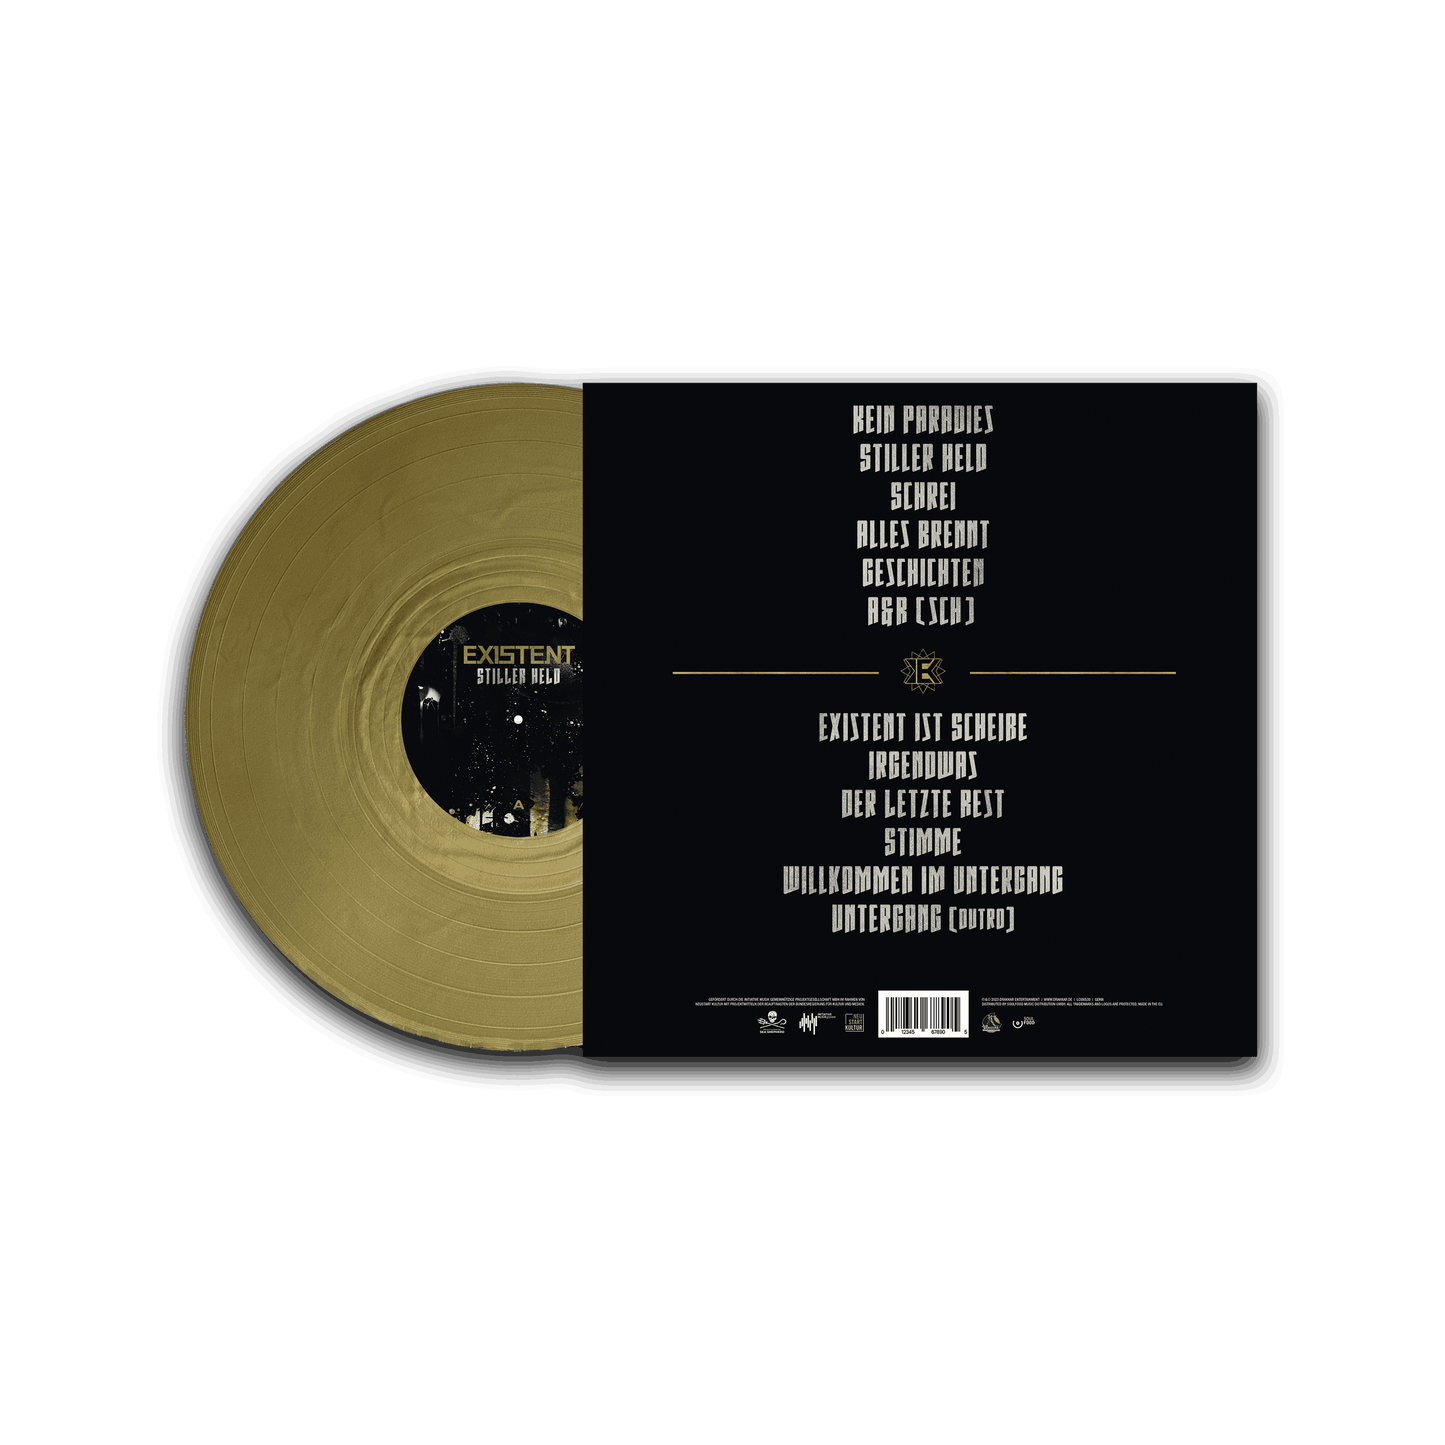 STILLER HELD Limitierte Gold Vinyl